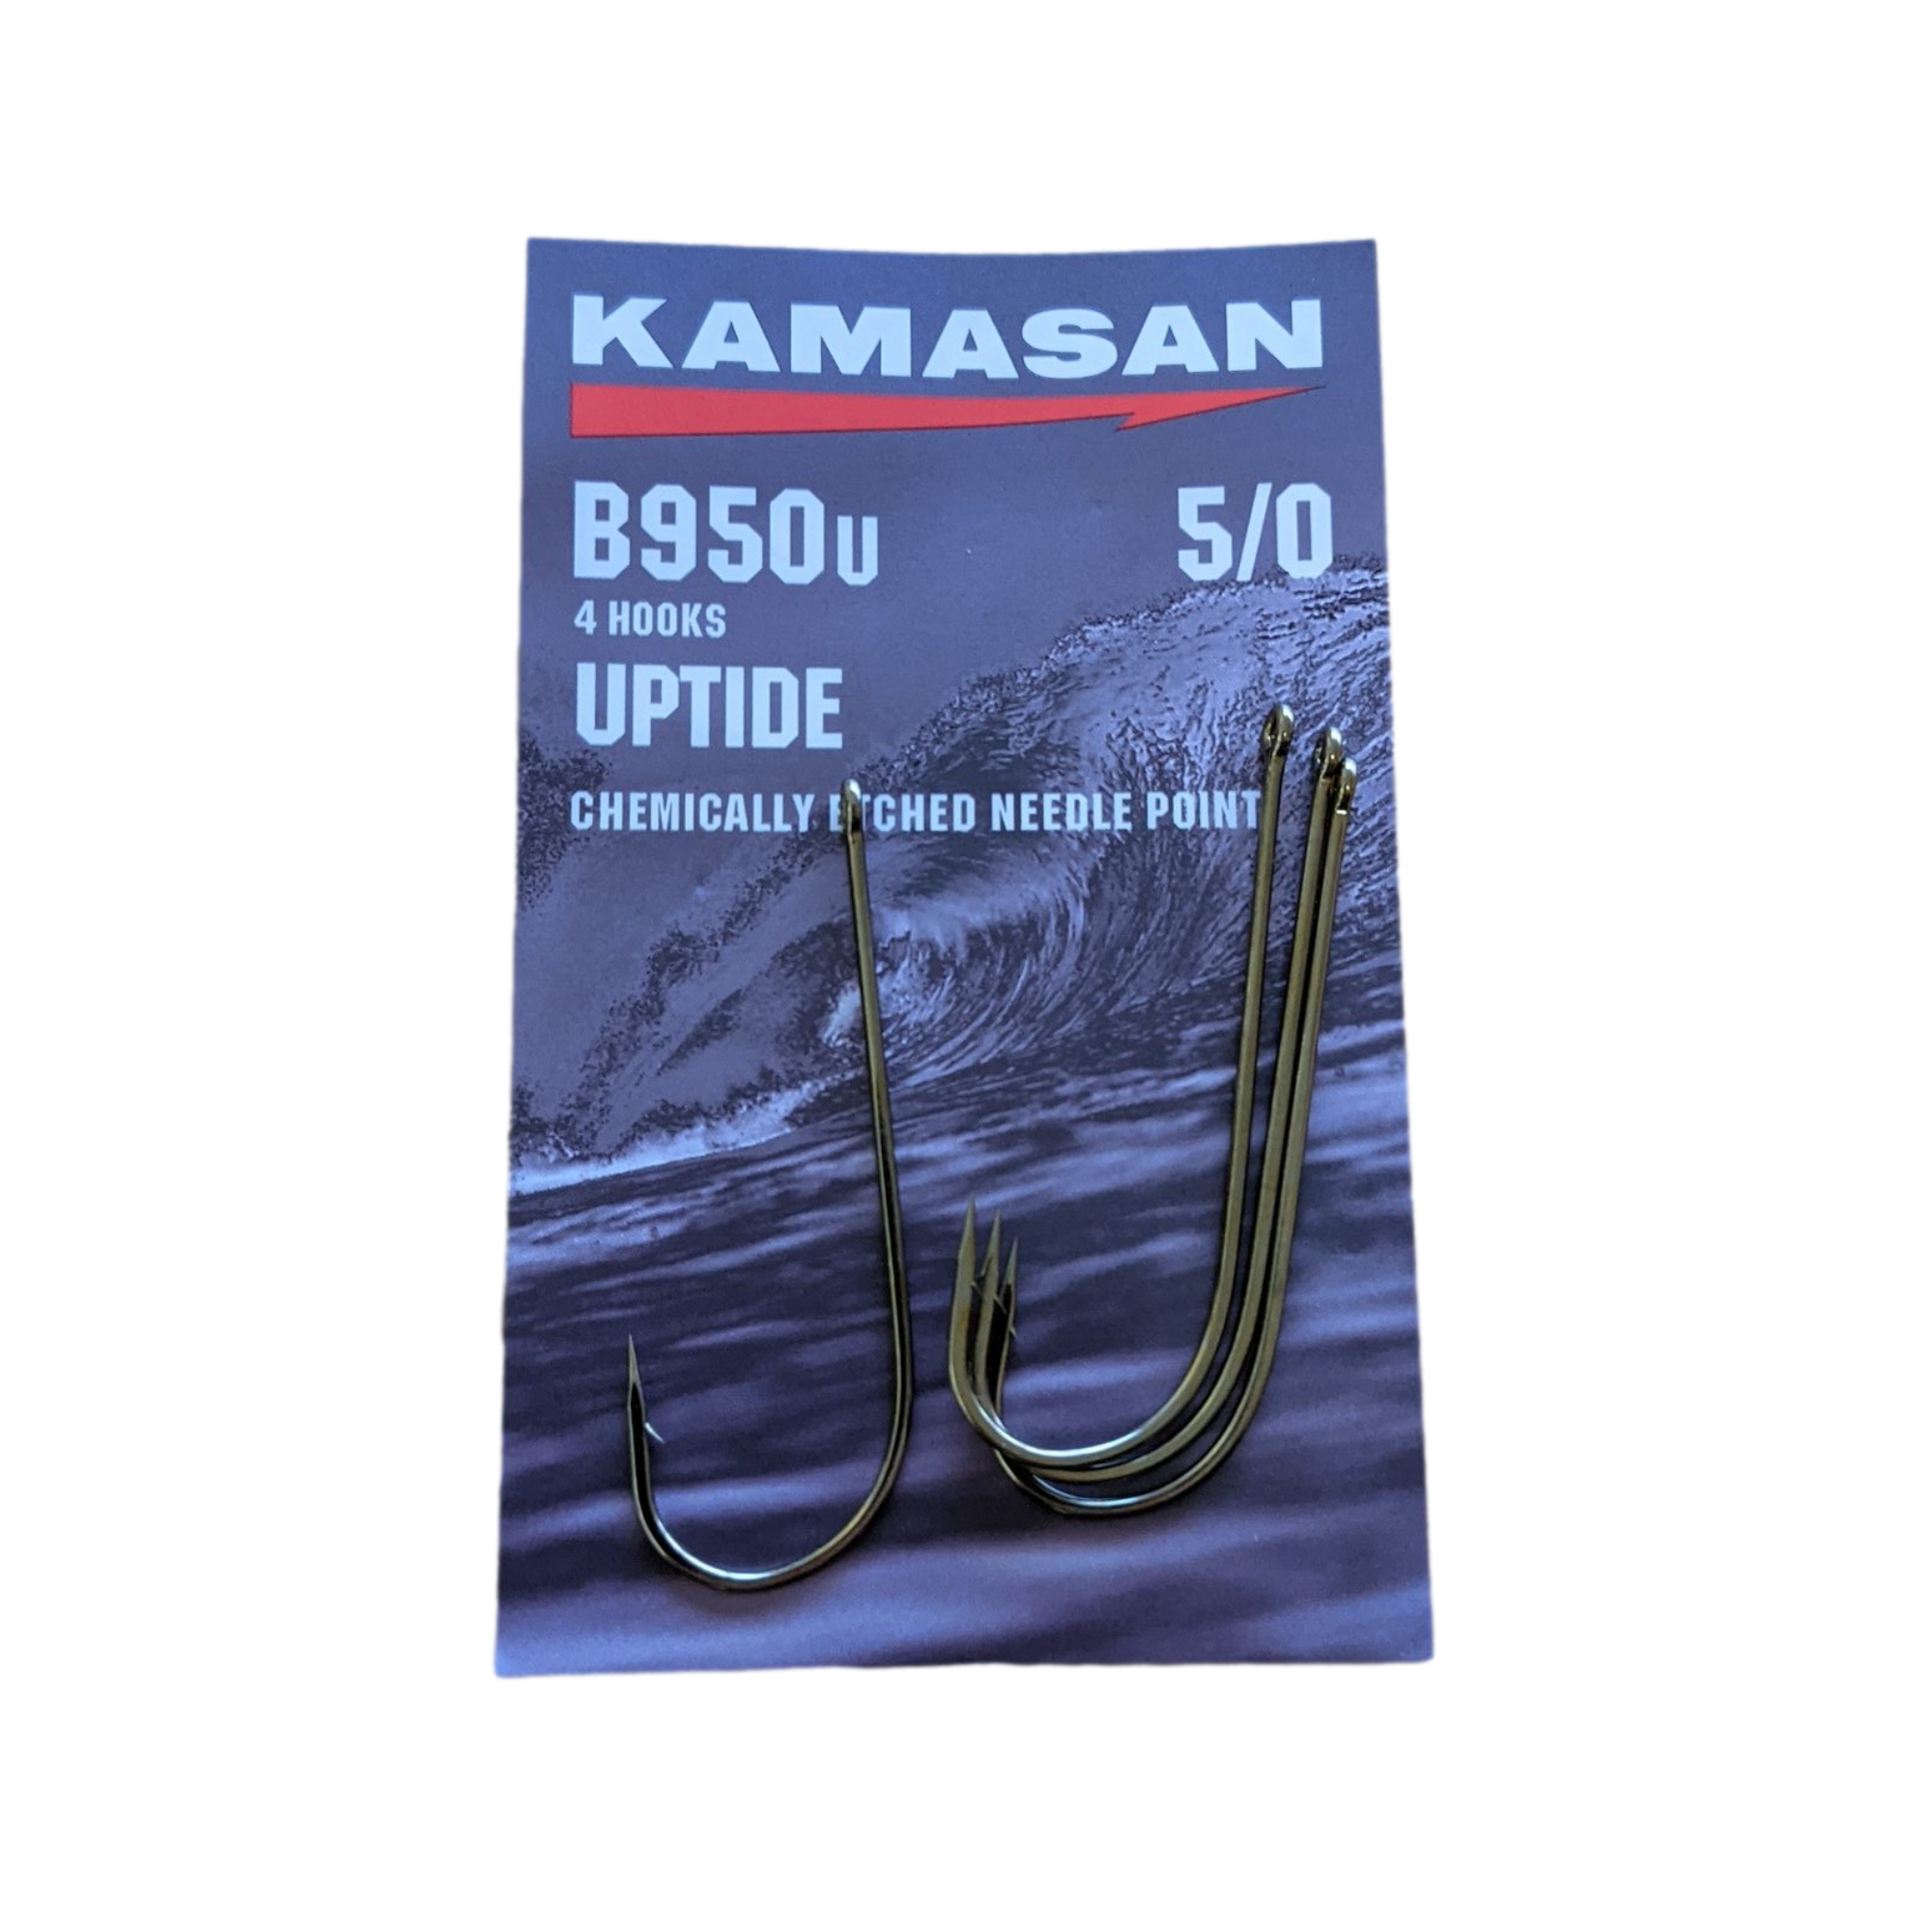 Kamasan Sea Fishing Hooks Range of Sizes and Hook Styles B940 B940S B950  B950U